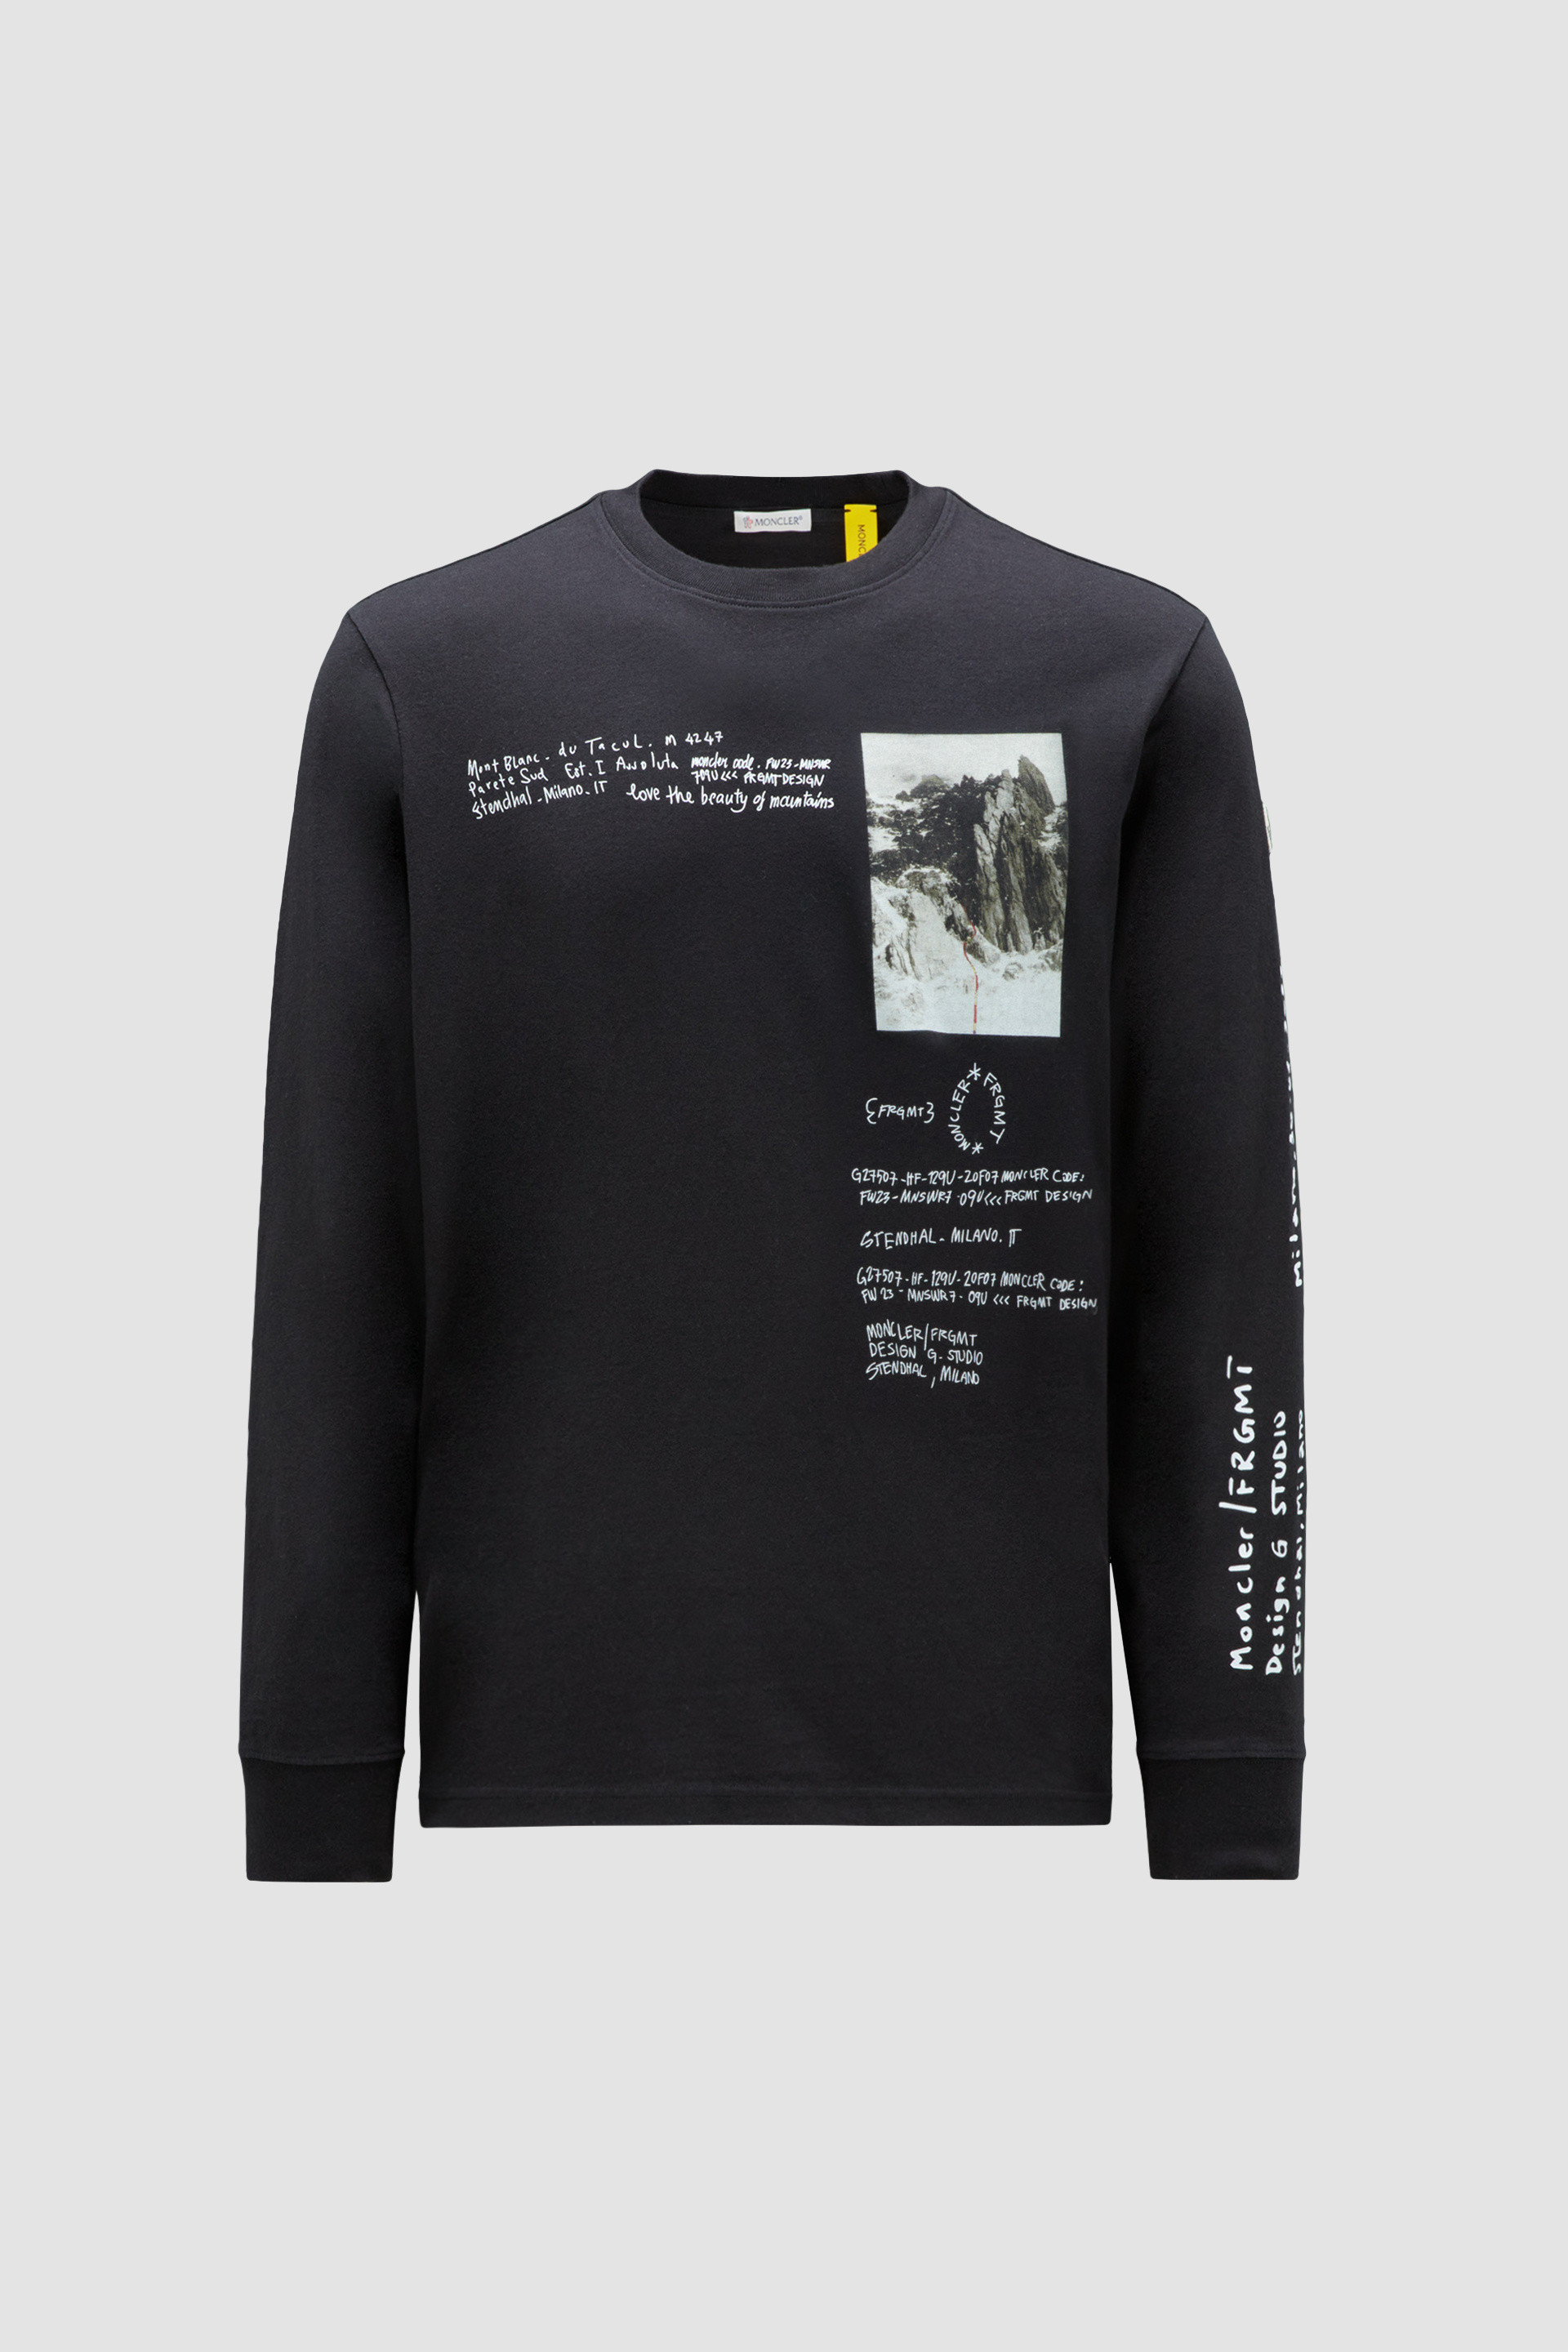 ブラック ロングスリーブTシャツ : Moncler x Frgmnt 向けの Genius 